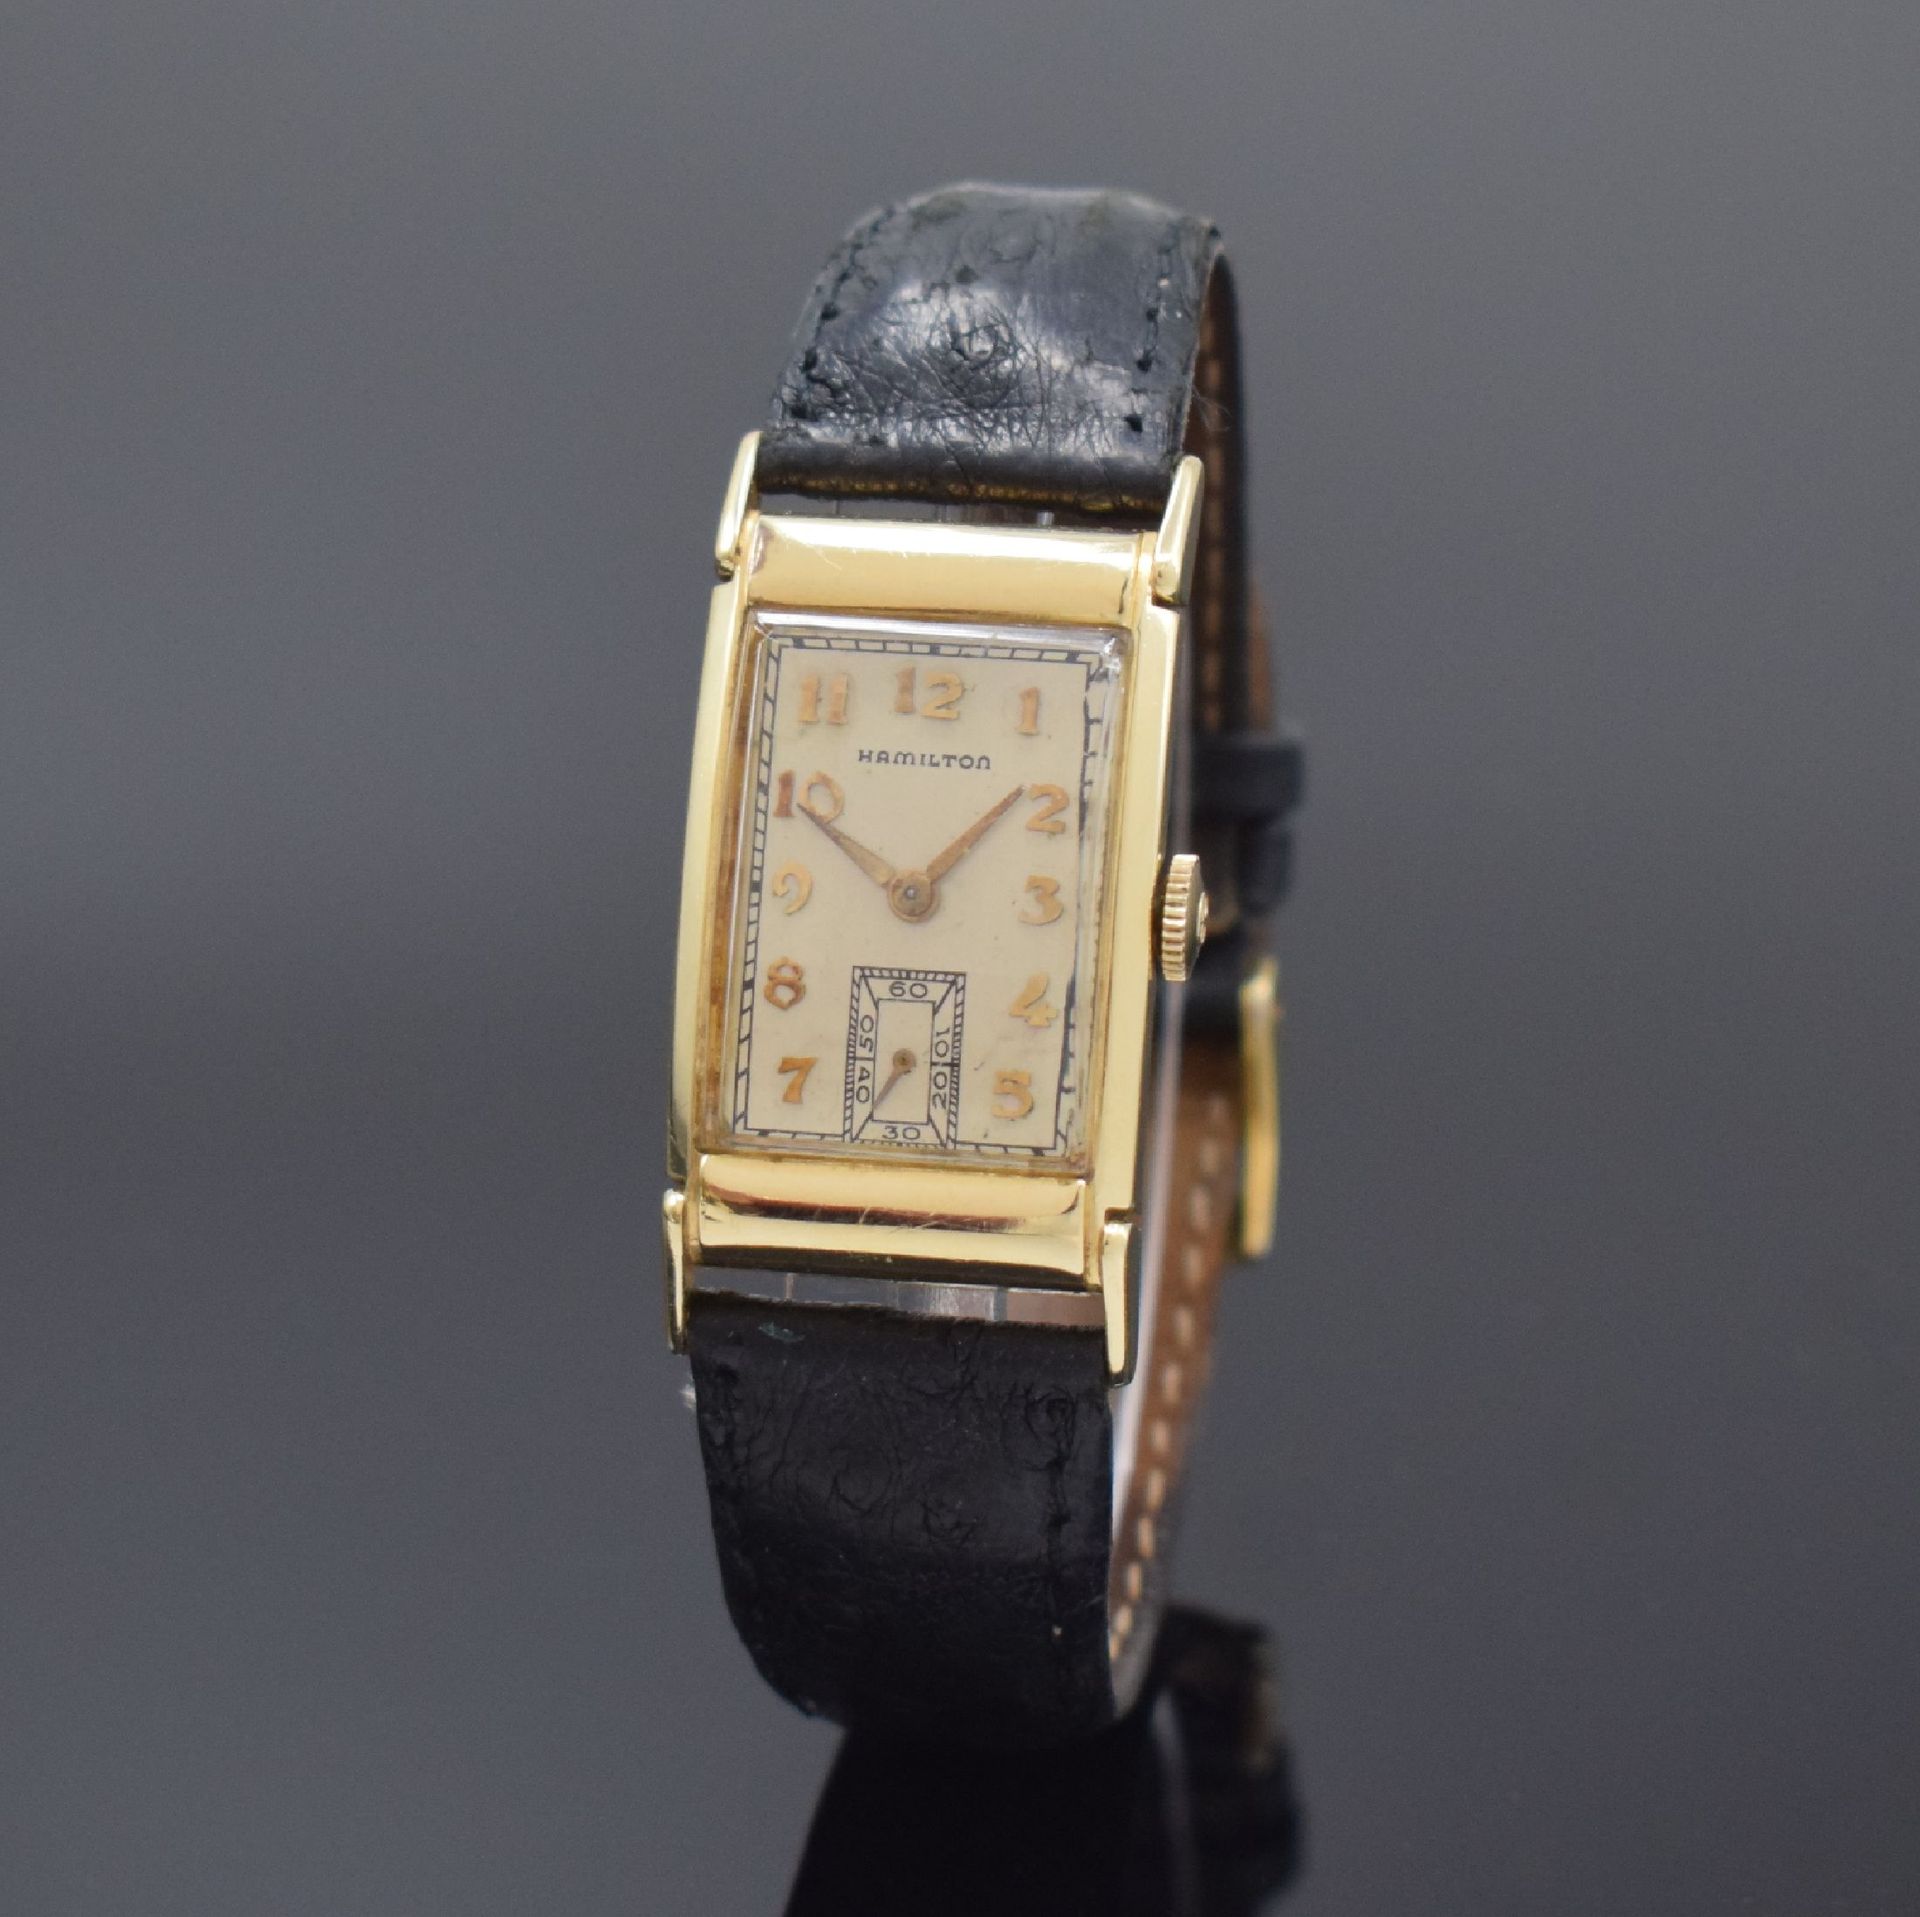 Null HAMILTON rectangular gold filled wristwatch, Switzerland/USA around 1940, m&hellip;